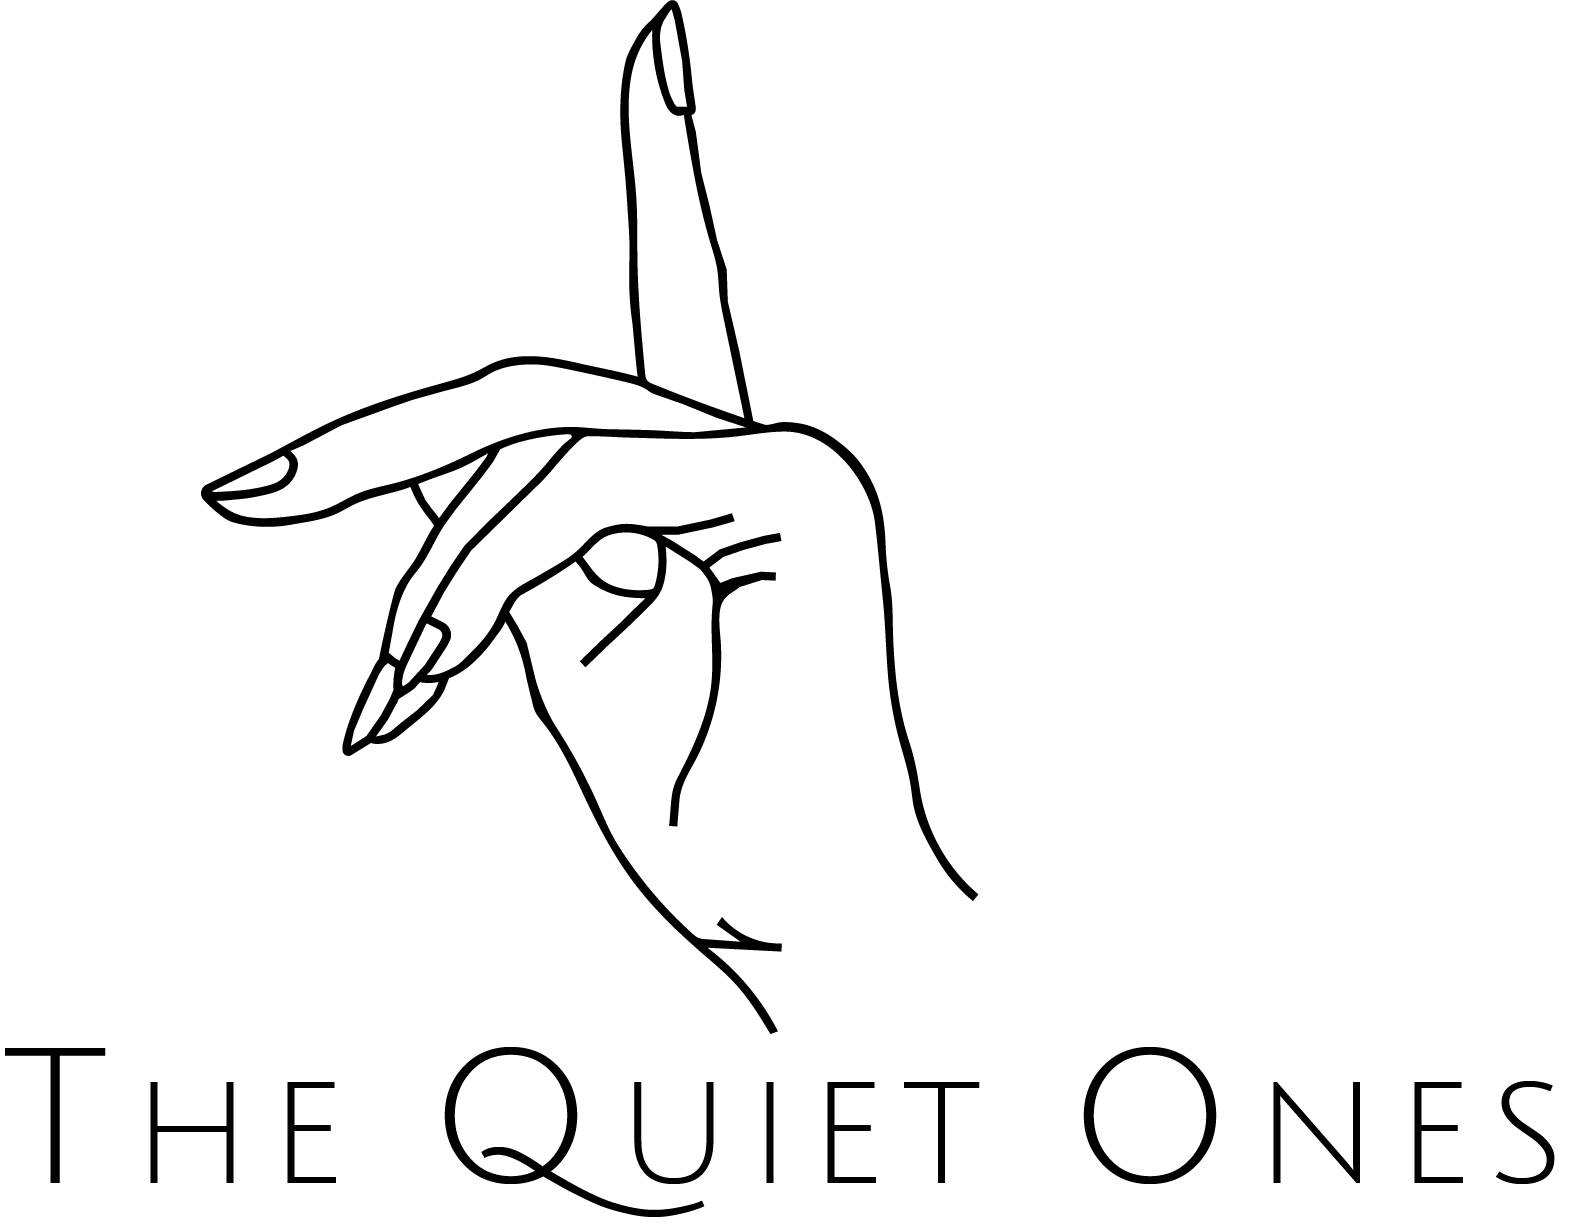 The Quiet Ones LLC